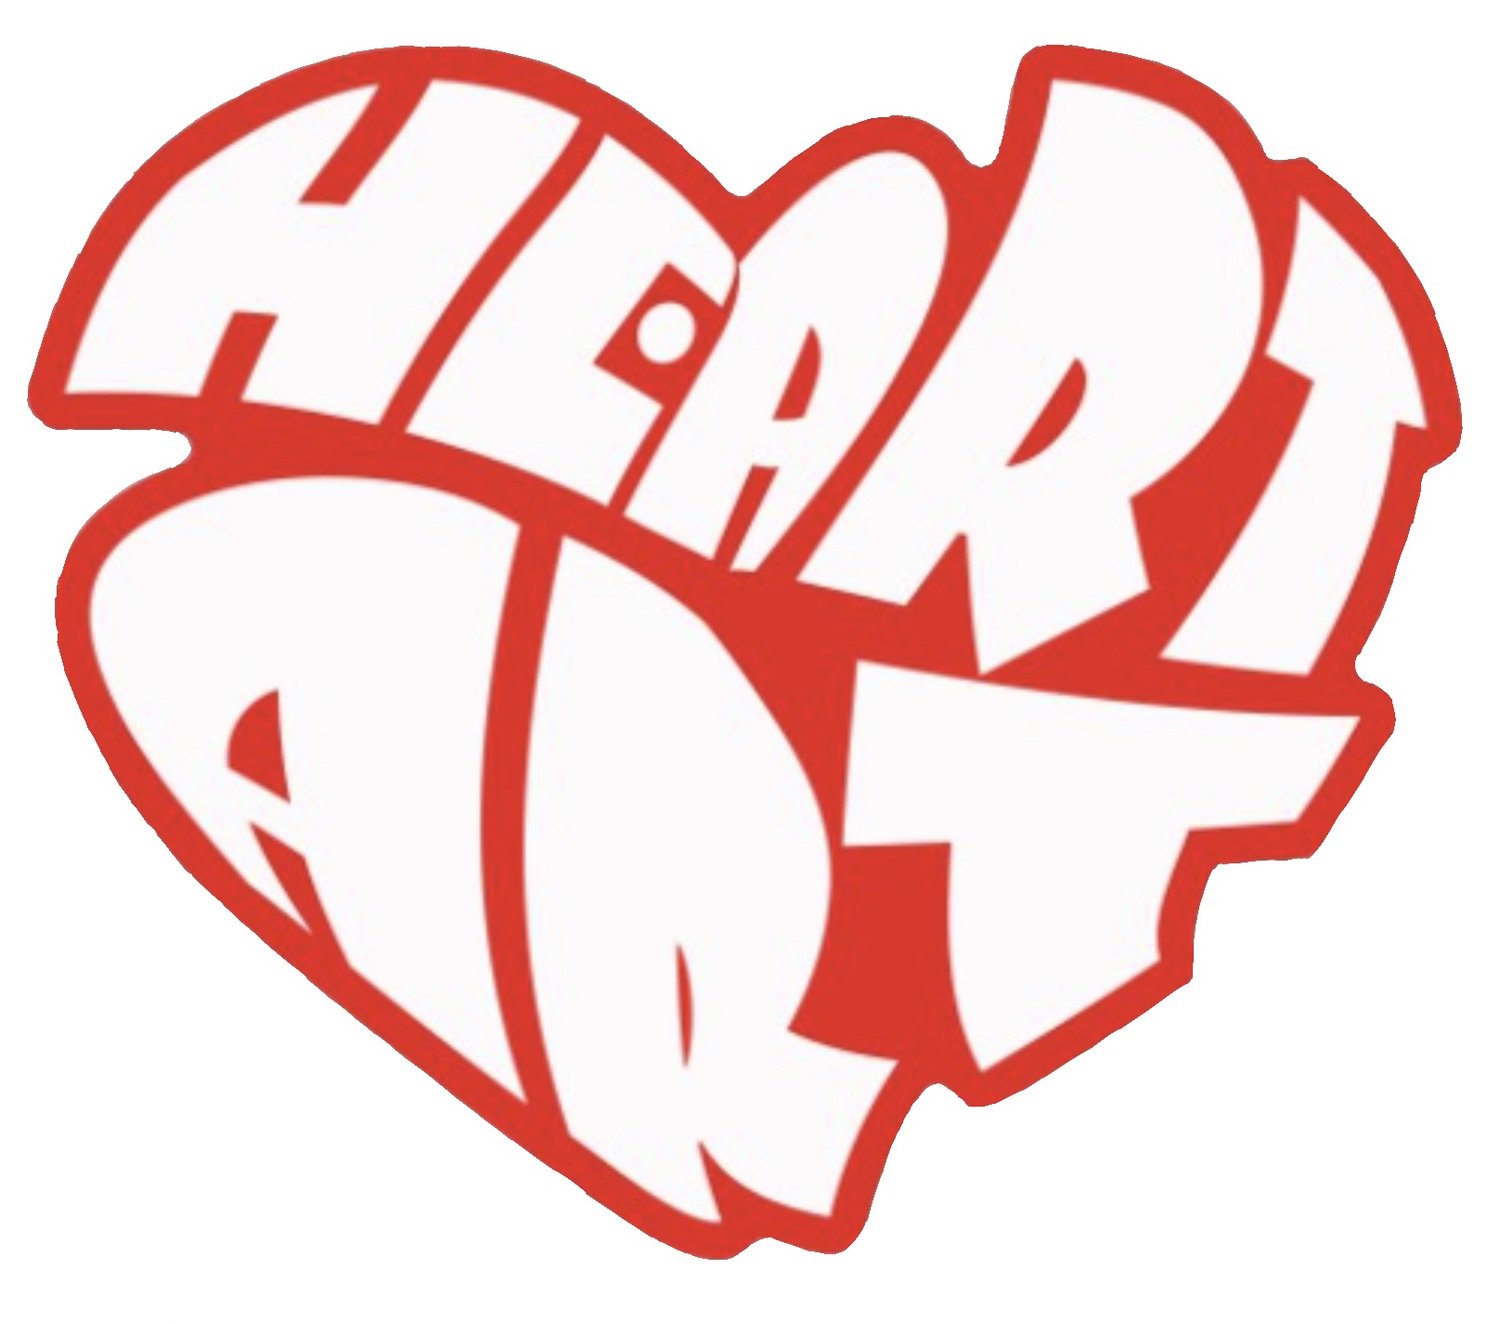 HeartArt Movement